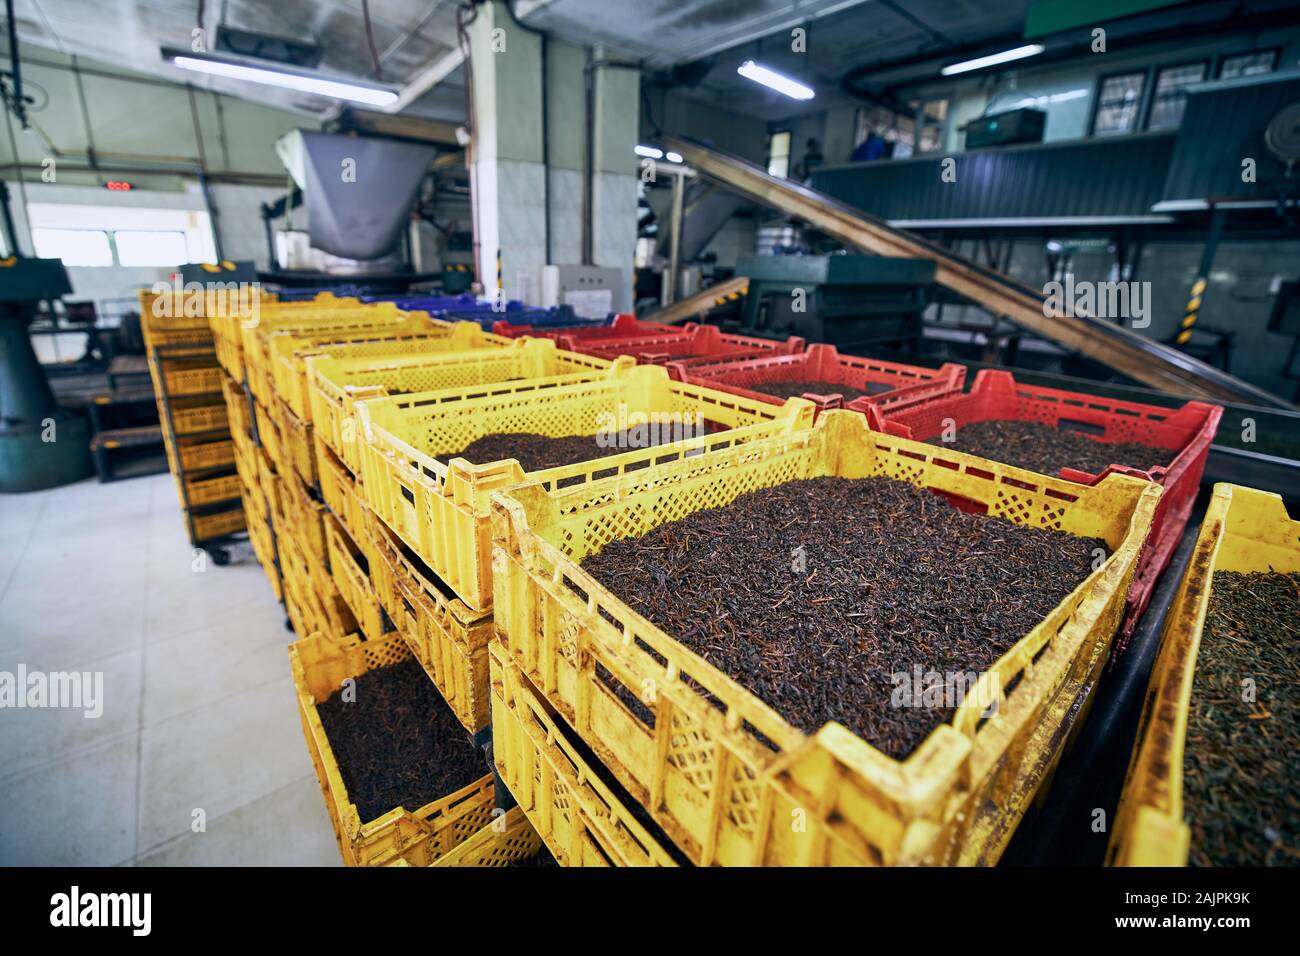 Les feuilles de thé séchées. L'intérieur de la ligne de production, usine de thé de Sri Lanka. Banque D'Images